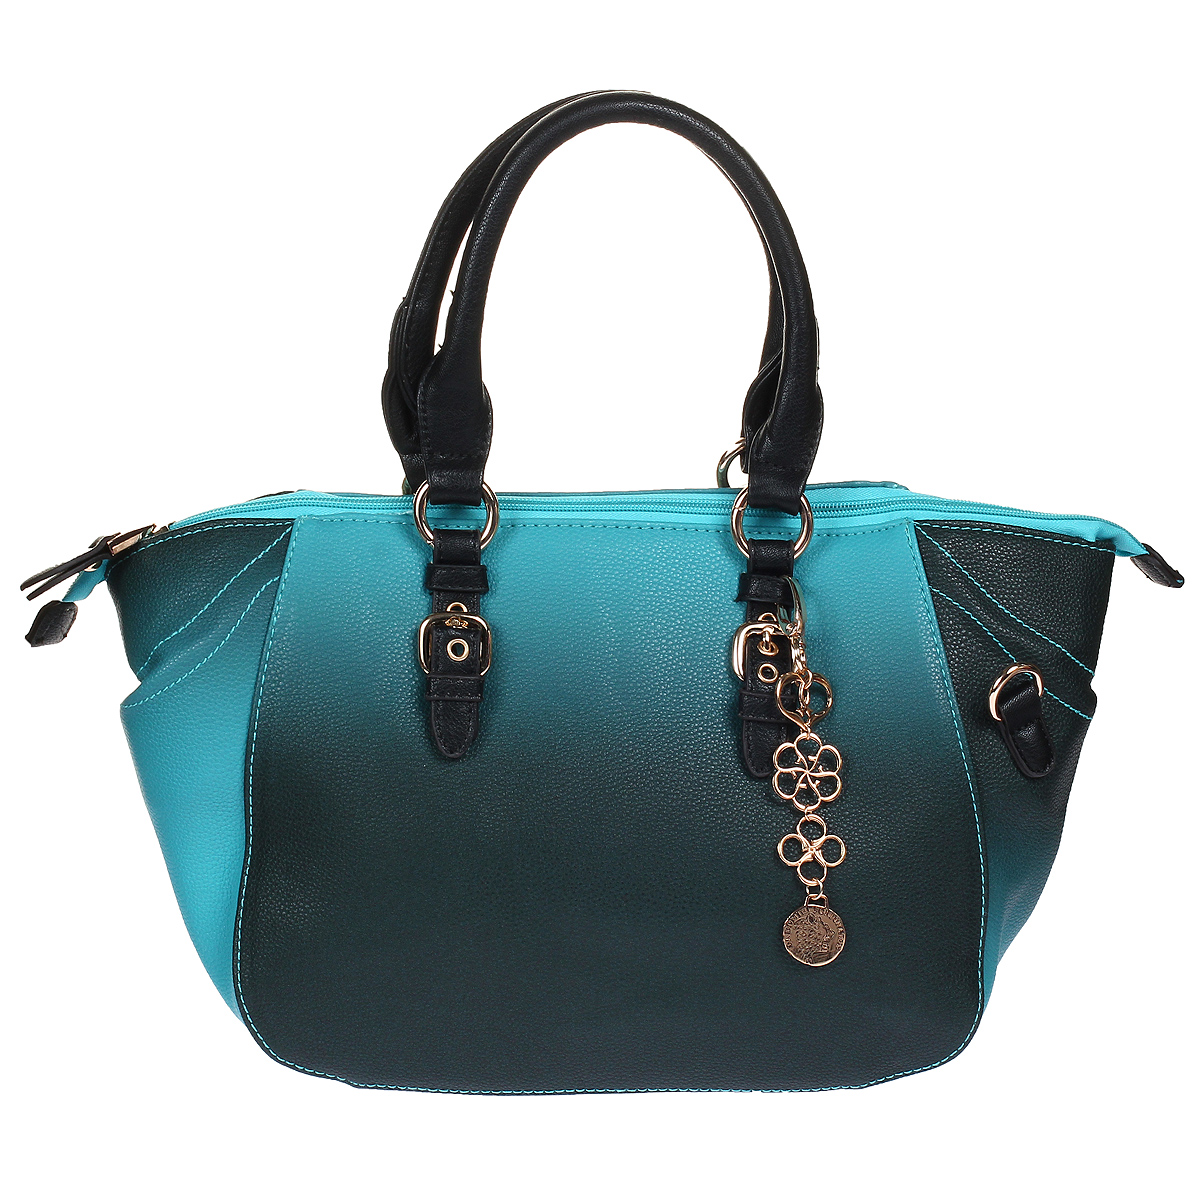 Сумка женская "Orsa Oro", цвет: бирюзовый. DK-371/19 - купить фирменную сумку по доступной цене с доставкой на дом в интернет магазине OZON.ru